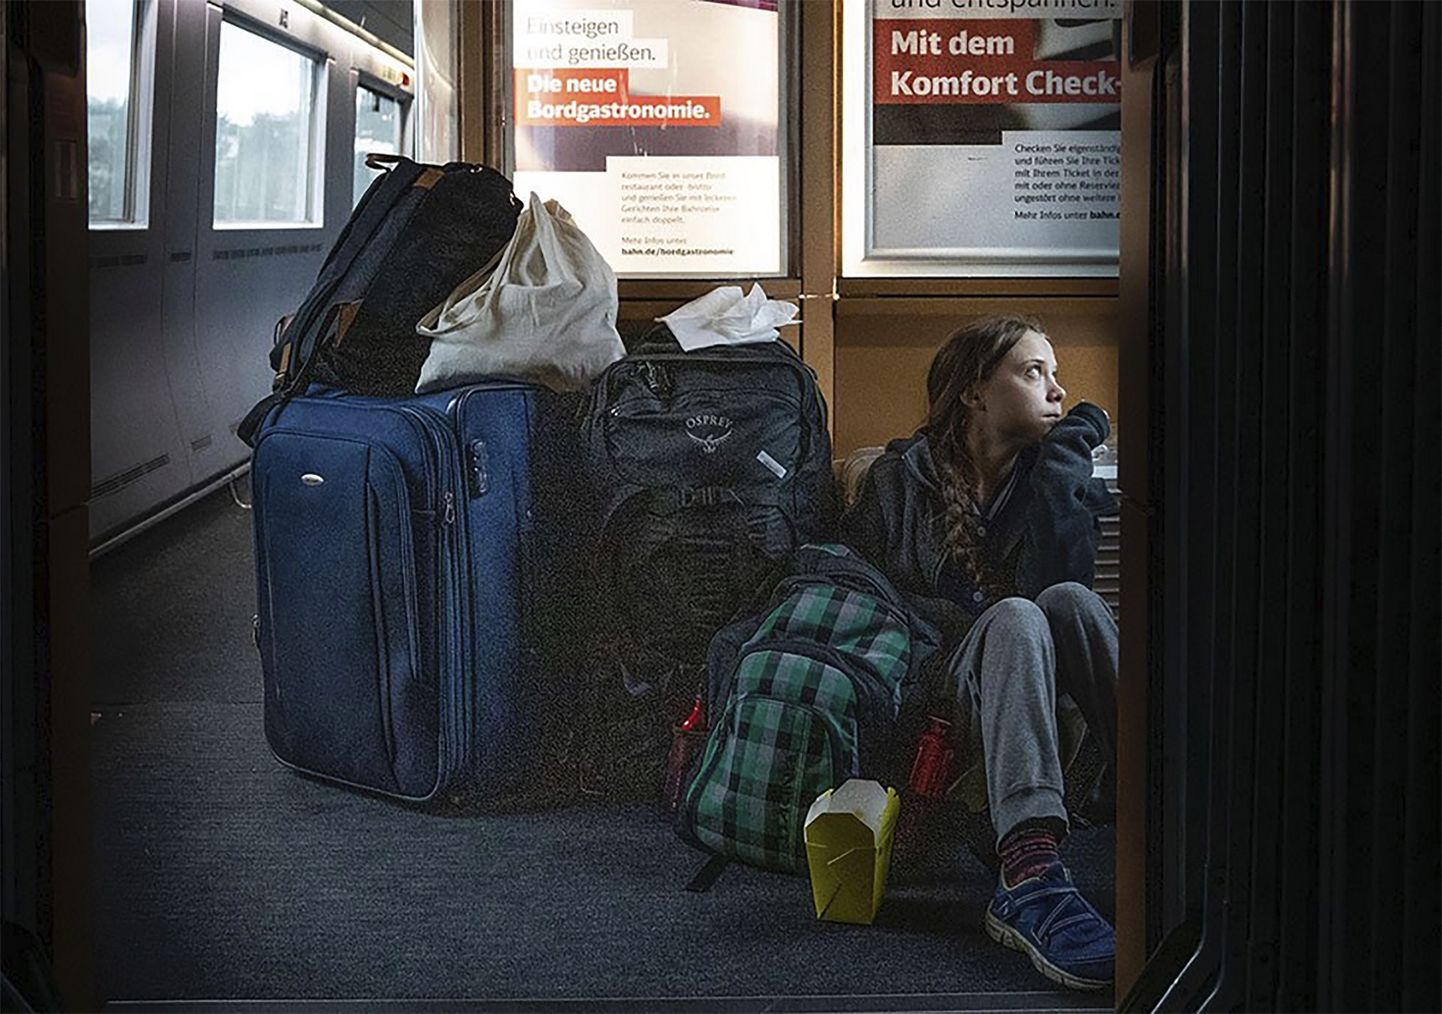 Kliimaaktivist Greta Thunberg istumas läbi Saksamaa reisides rongipõrandal.